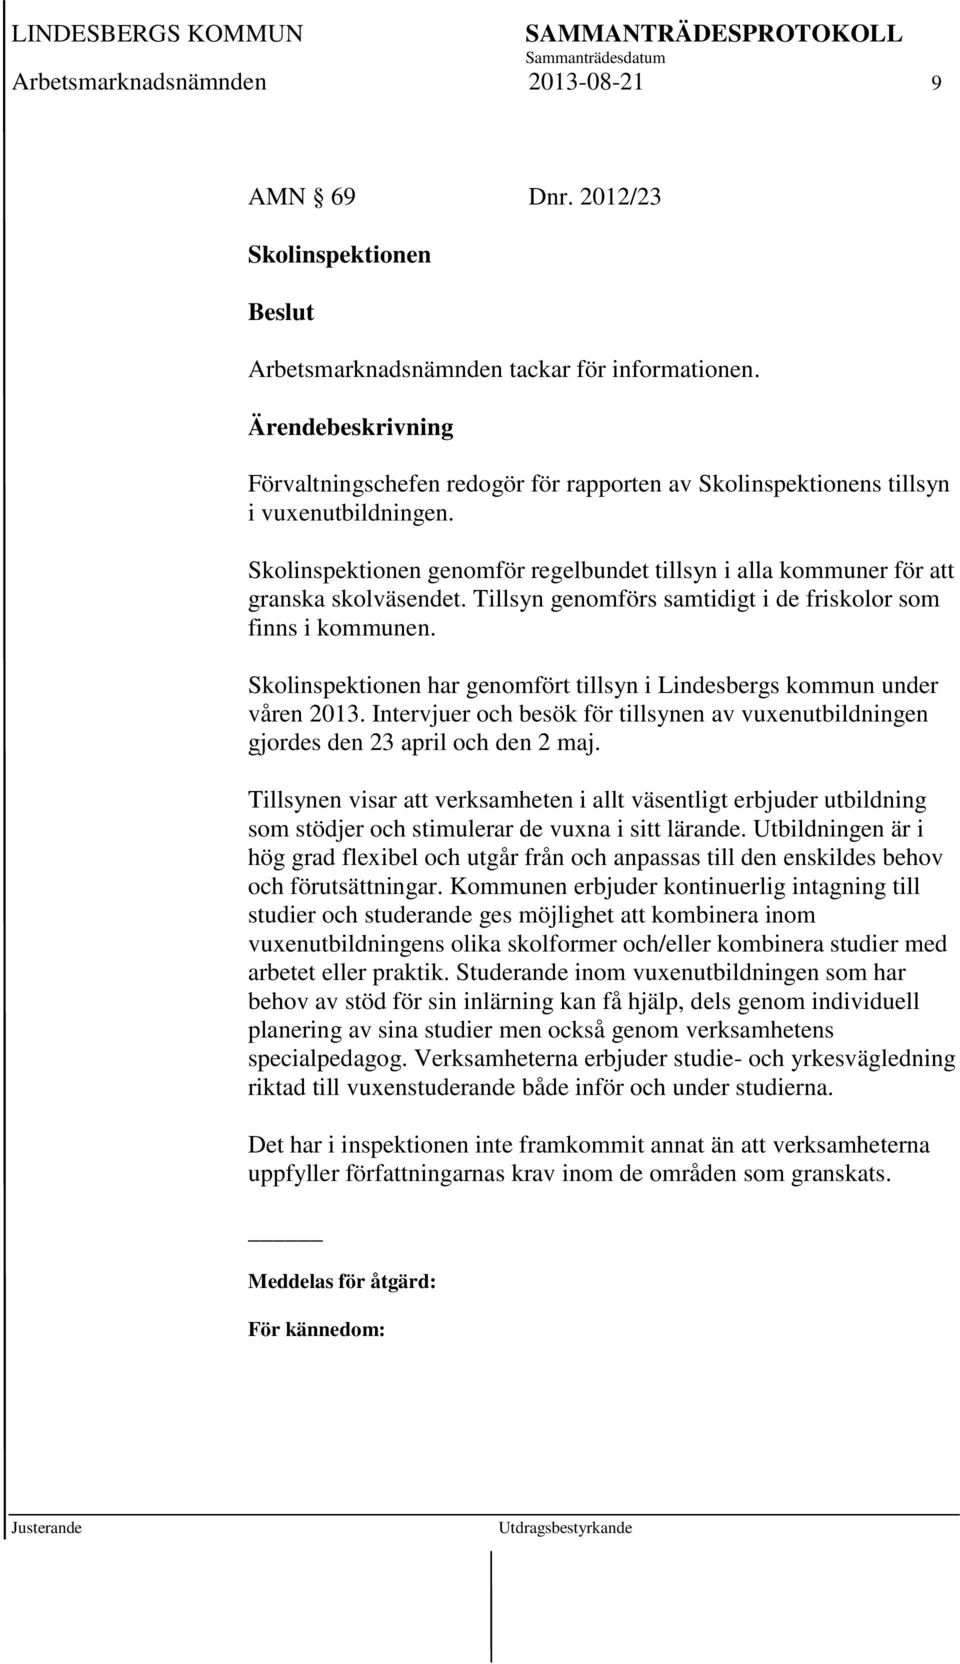 Tillsyn genomförs samtidigt i de friskolor som finns i kommunen. Skolinspektionen har genomfört tillsyn i Lindesbergs kommun under våren 2013.